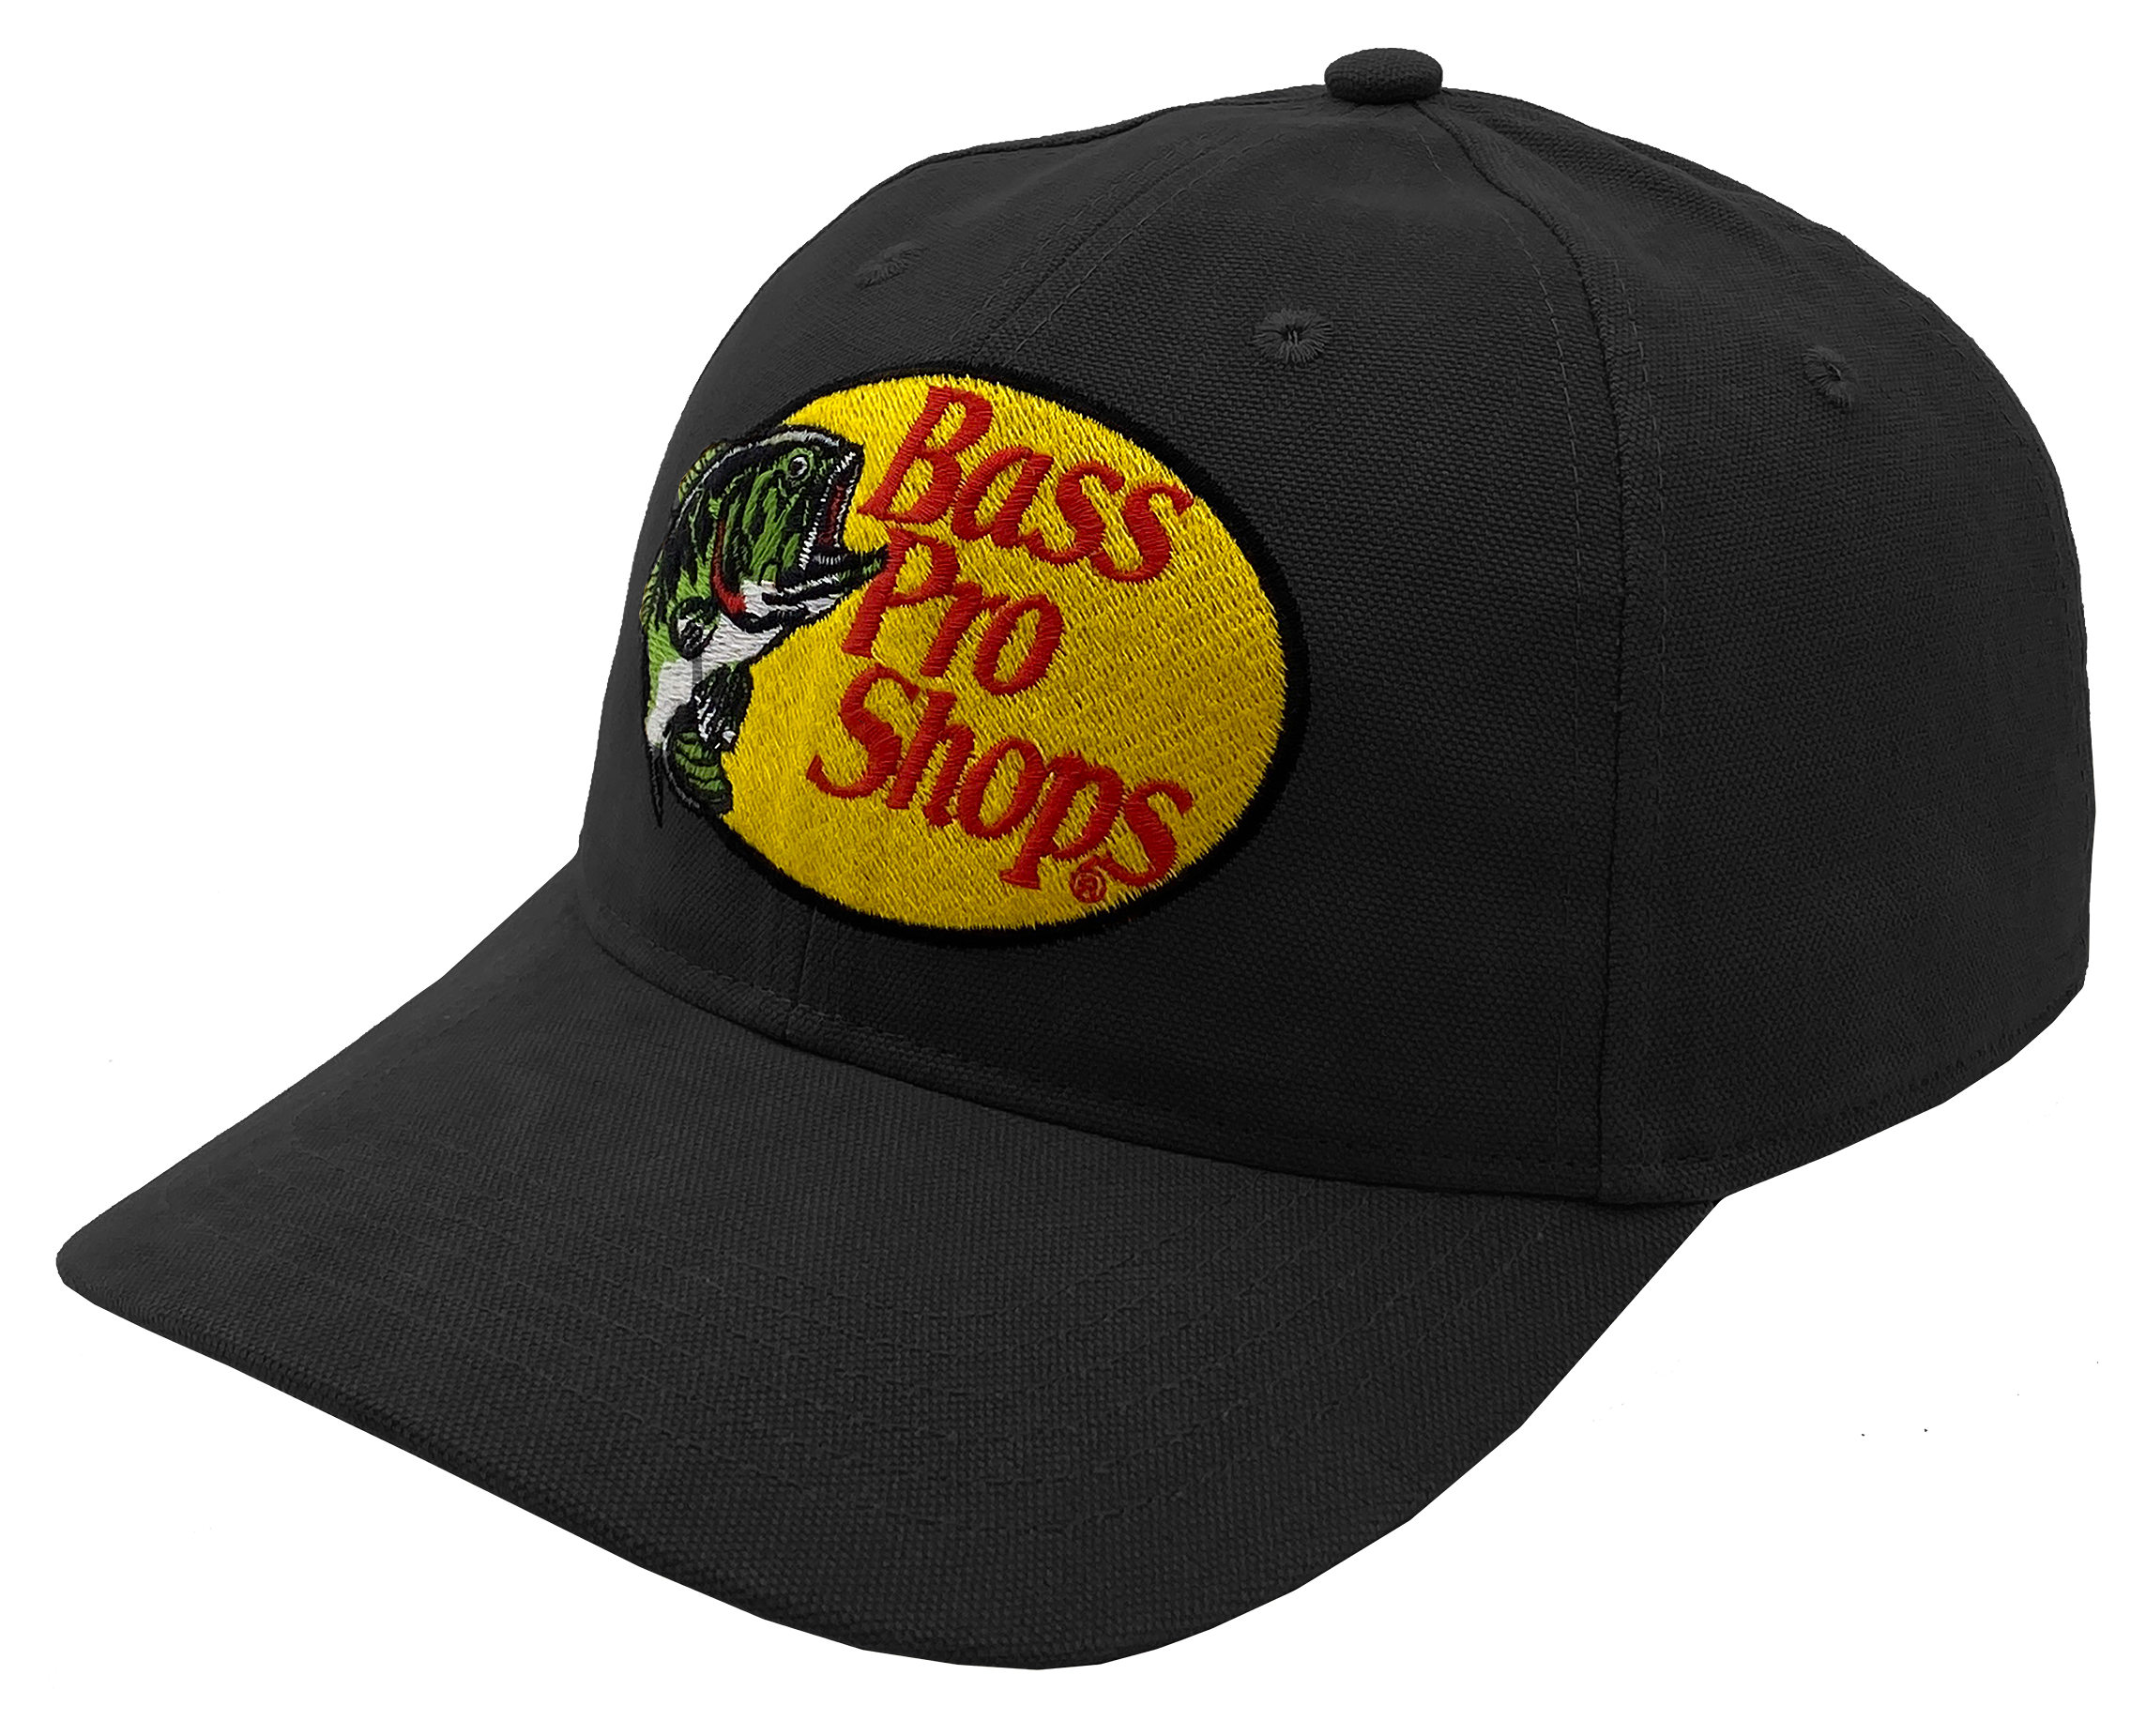 Basspro Hat